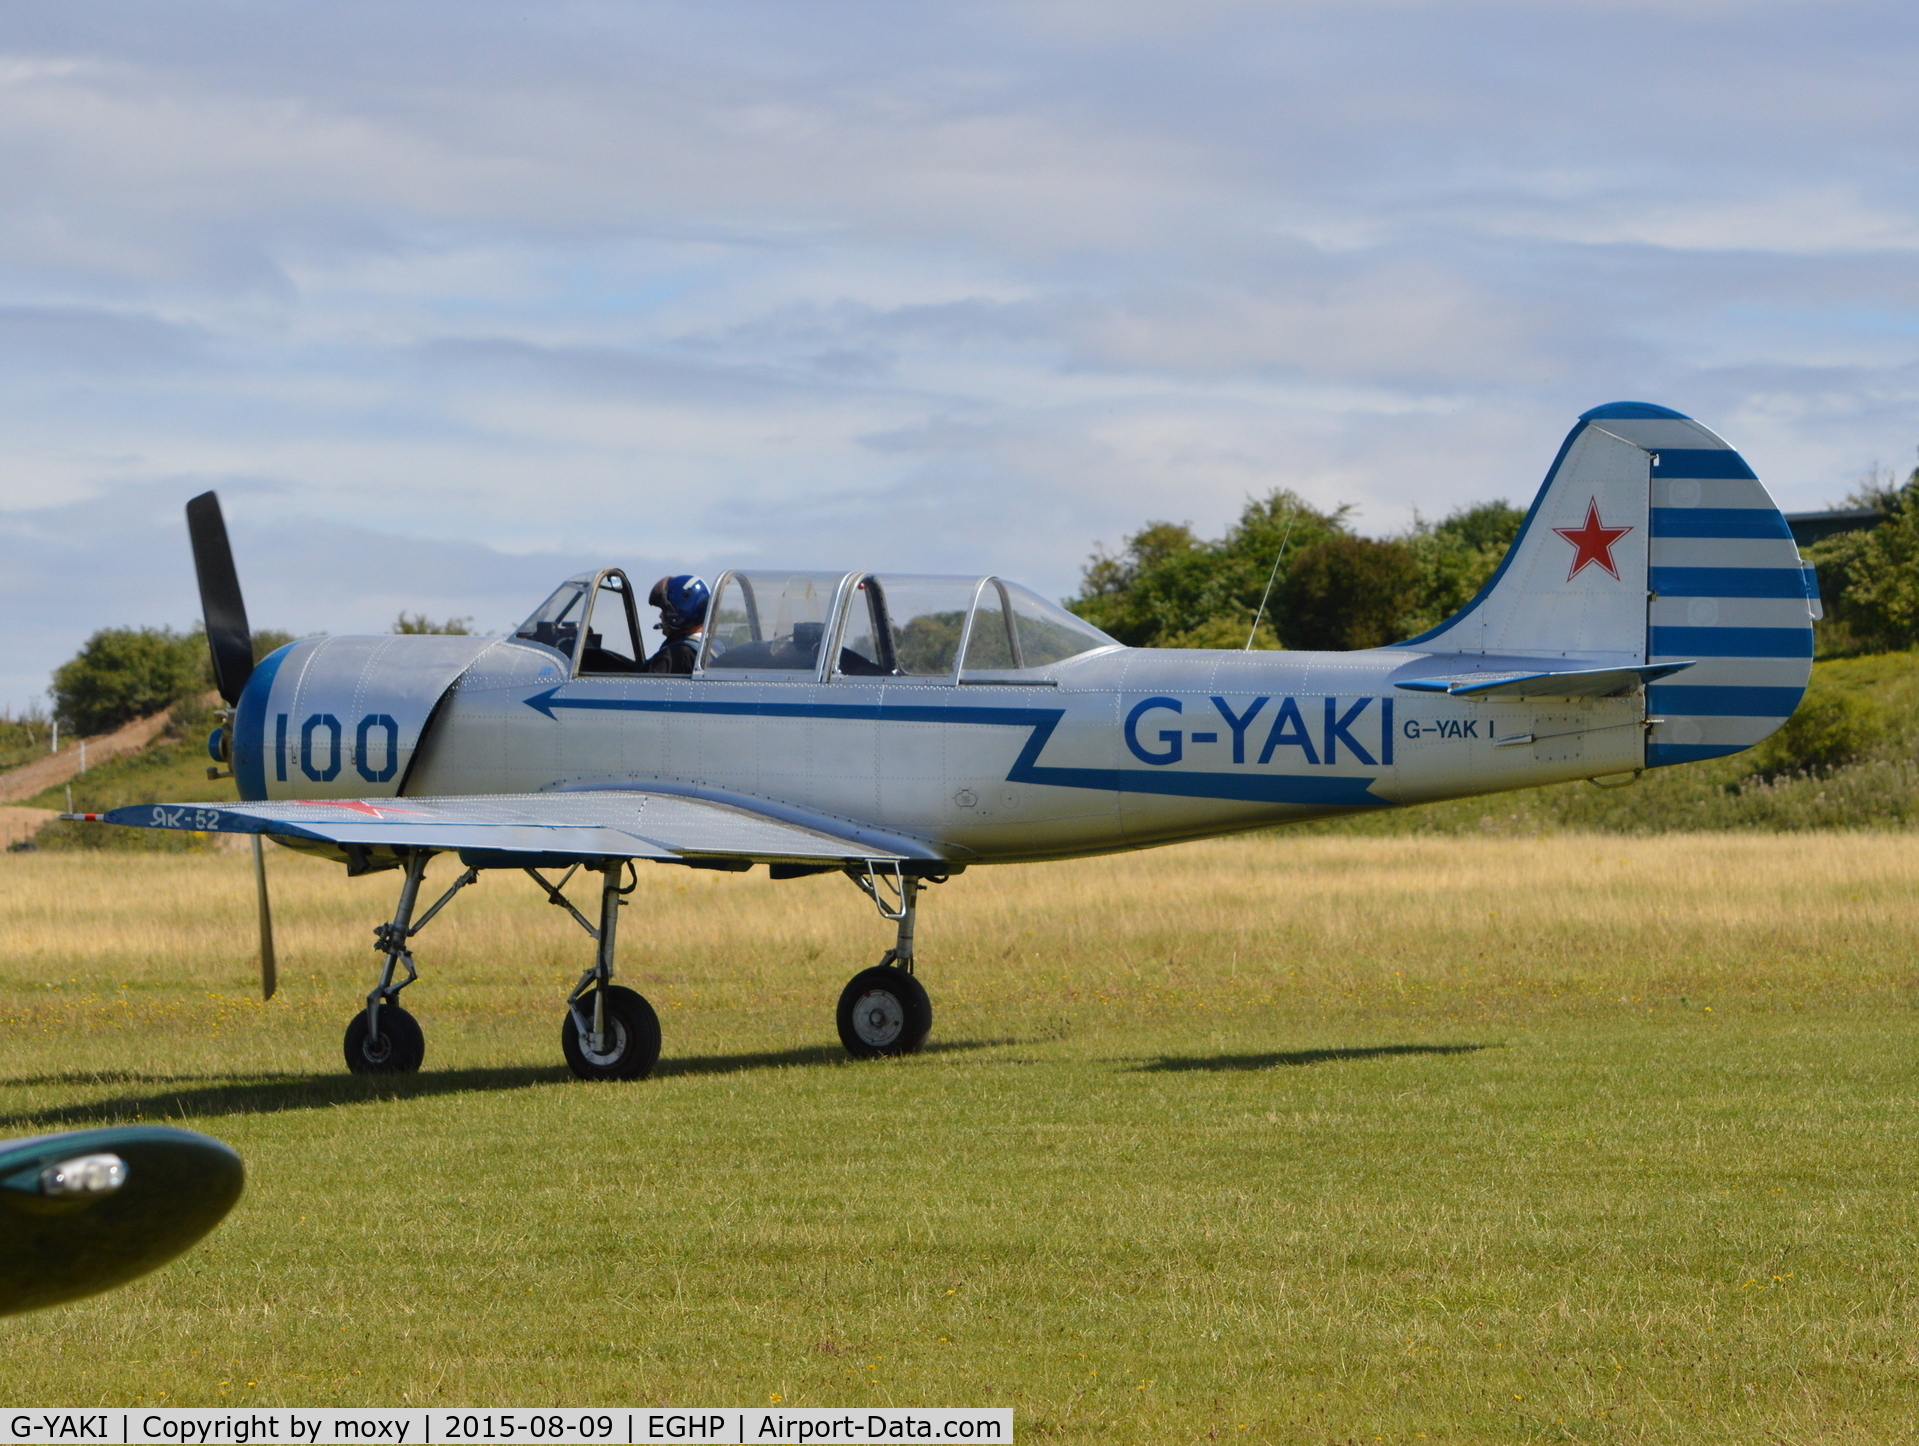 G-YAKI, 1986 Bacau Yak-52 C/N 866904, YAK-52 at Popham. Ex LY-ANM.